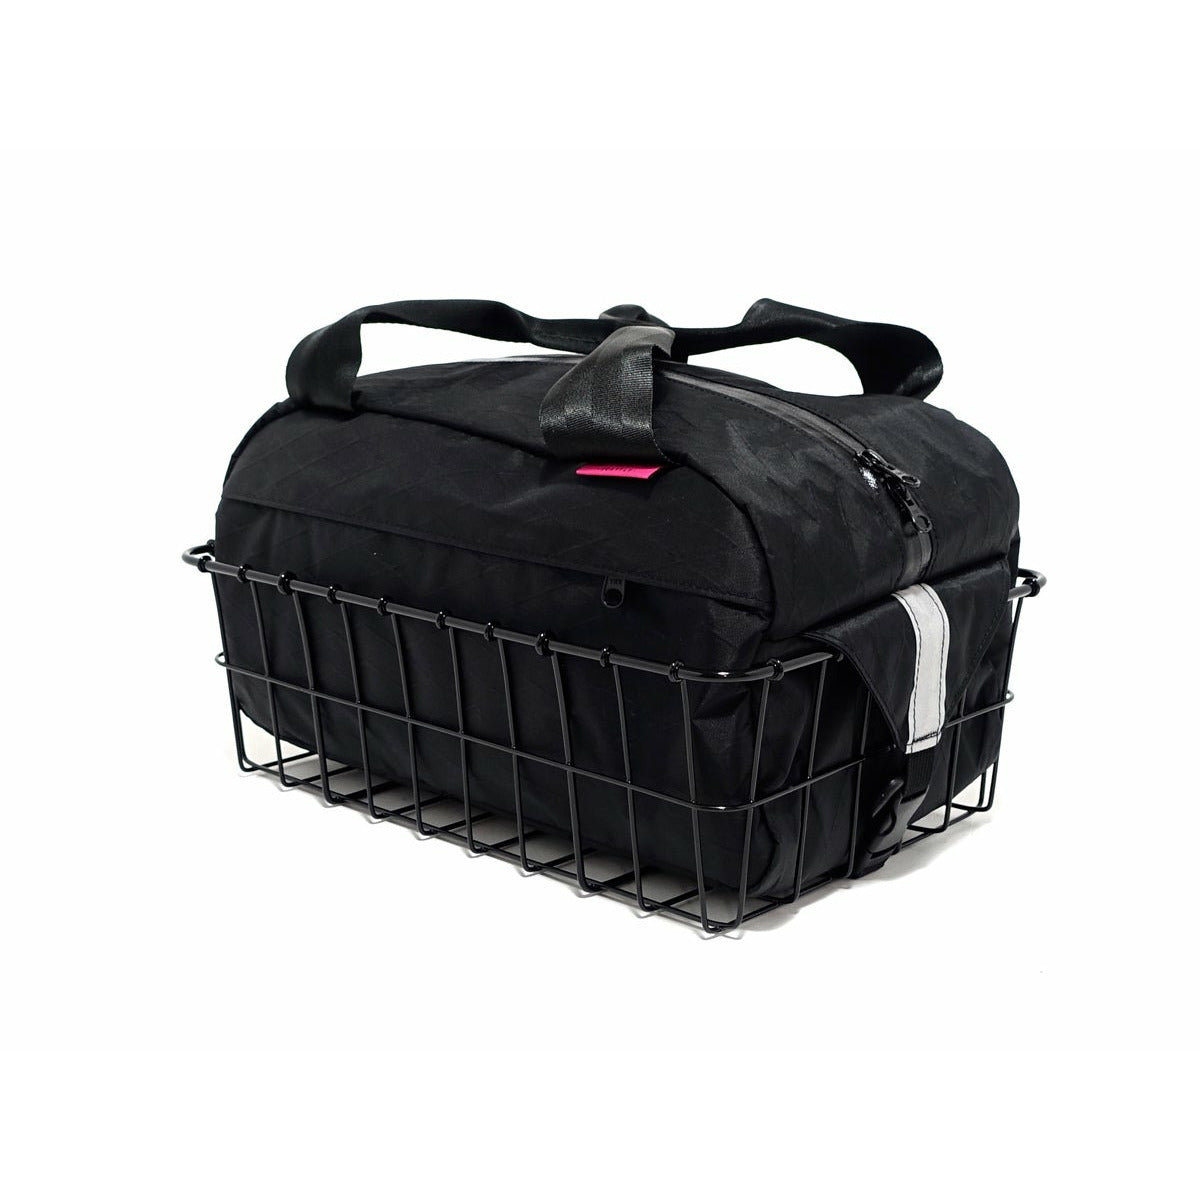 Swift Industries Mother Loaf Basket Bag